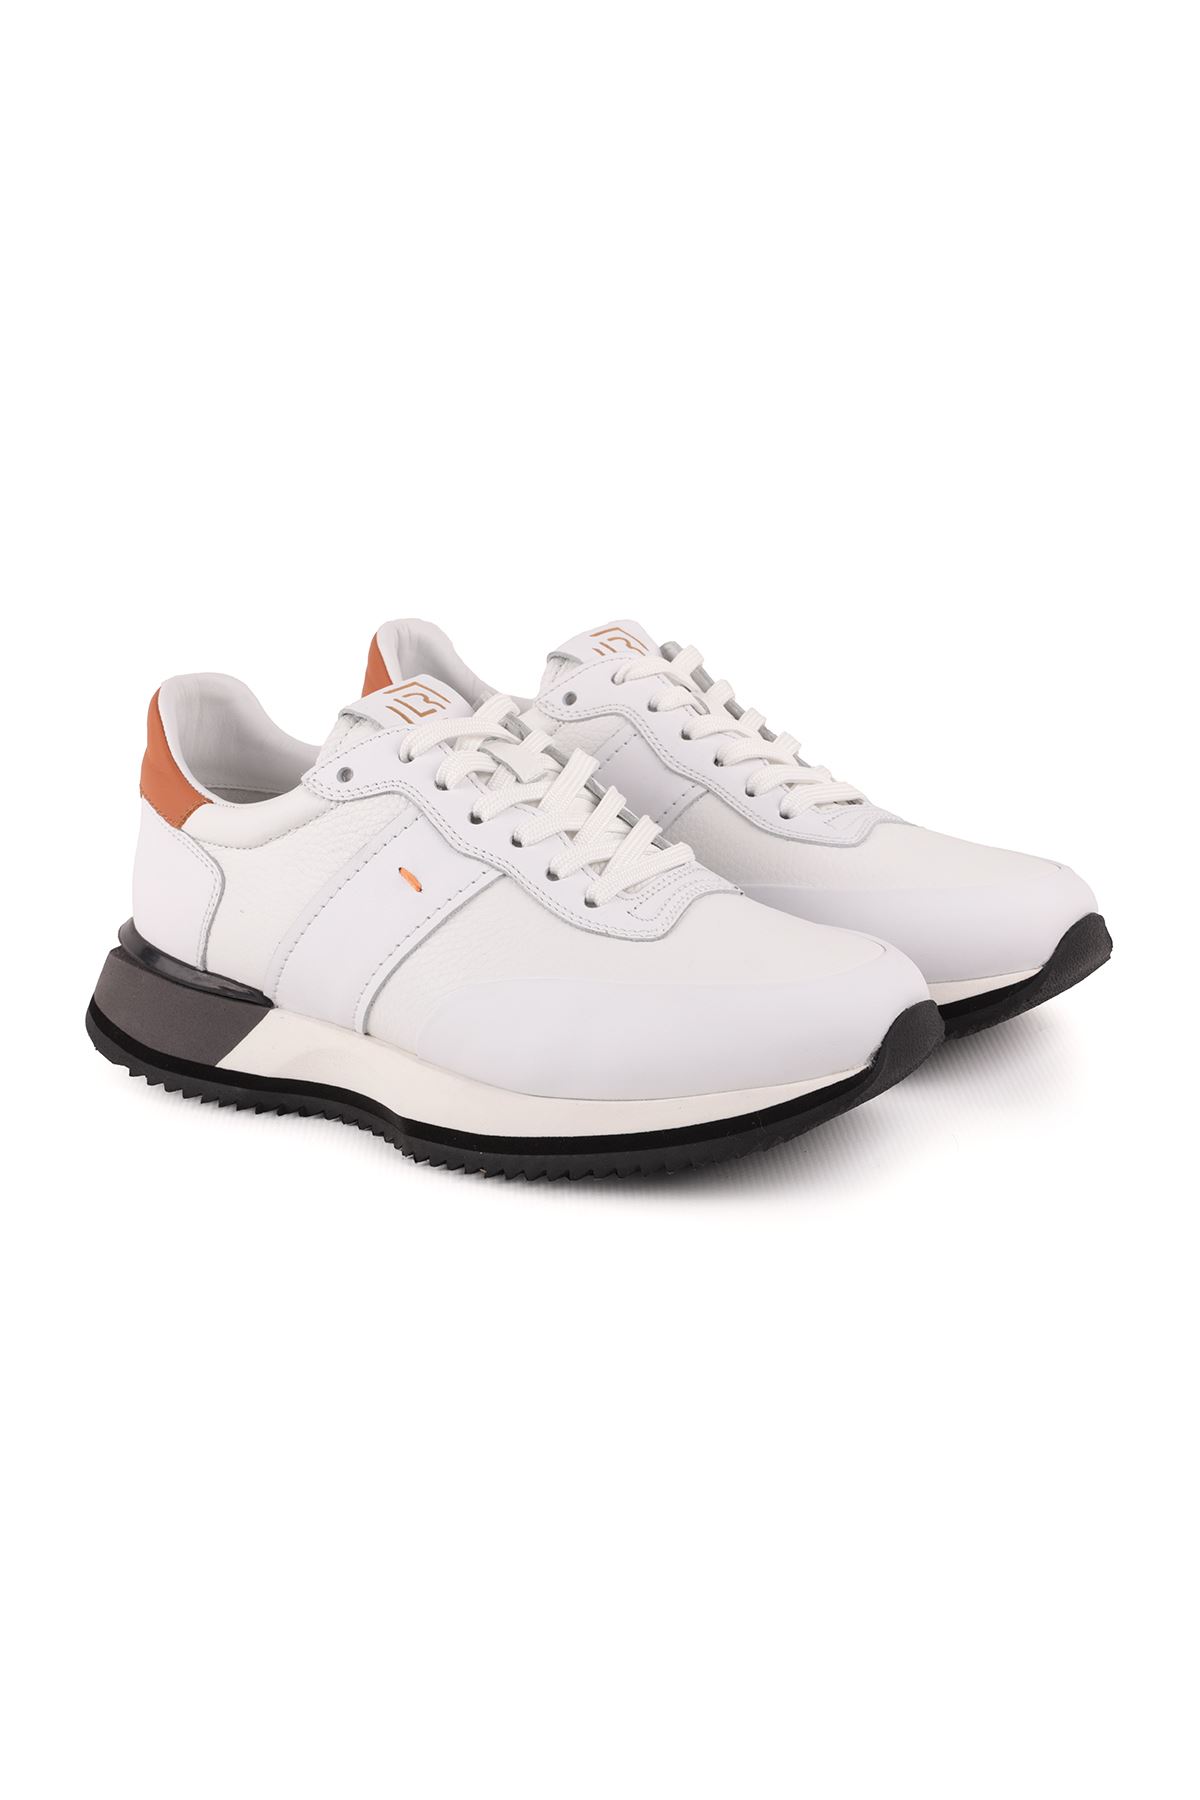 Libero L4843 Beyaz Erkek Spor Ayakkabı 